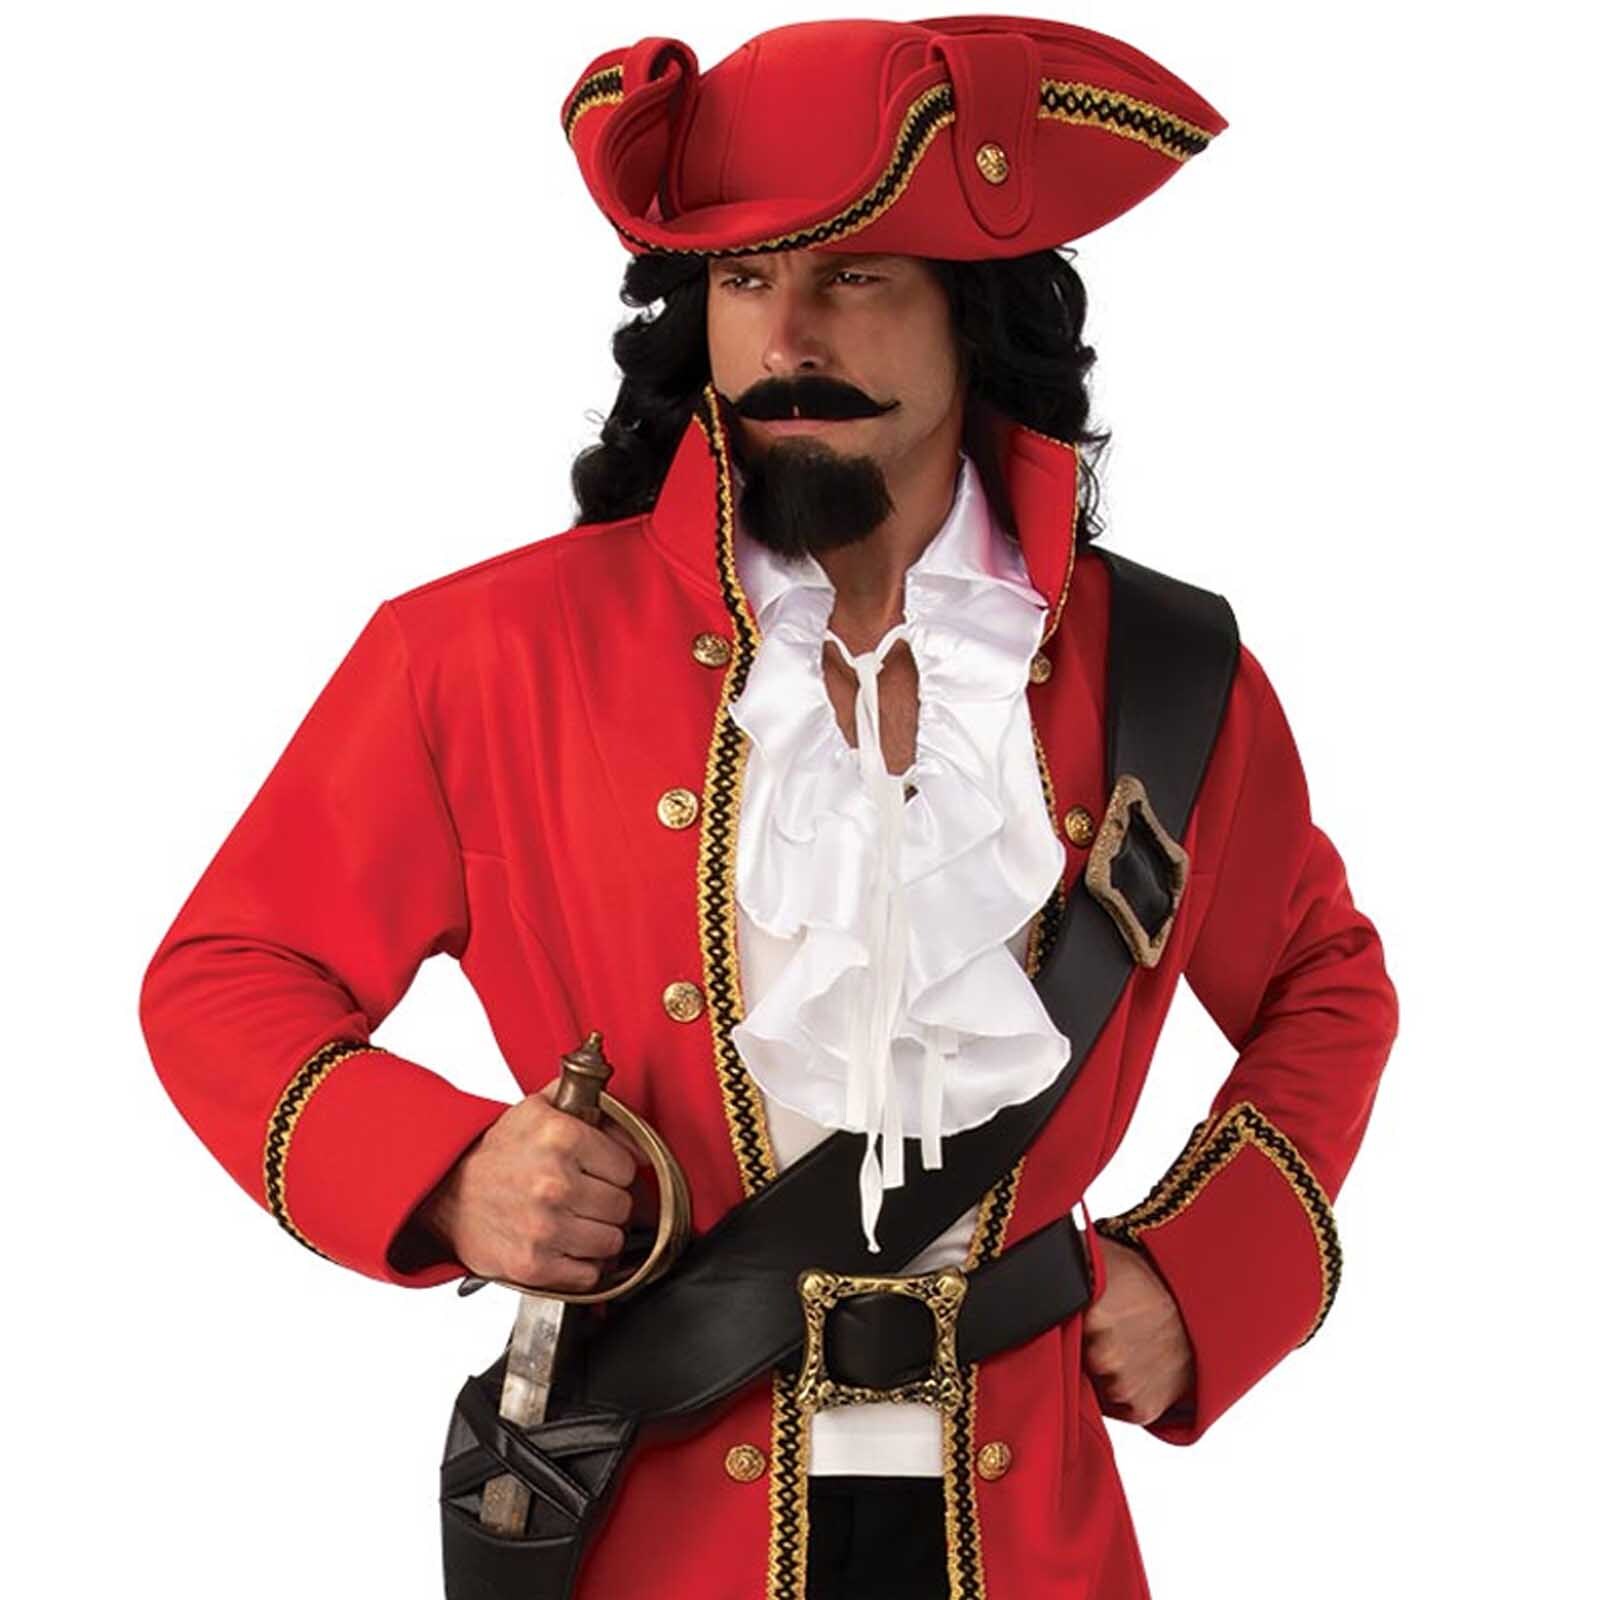 Pirate Captain Costume - Adult